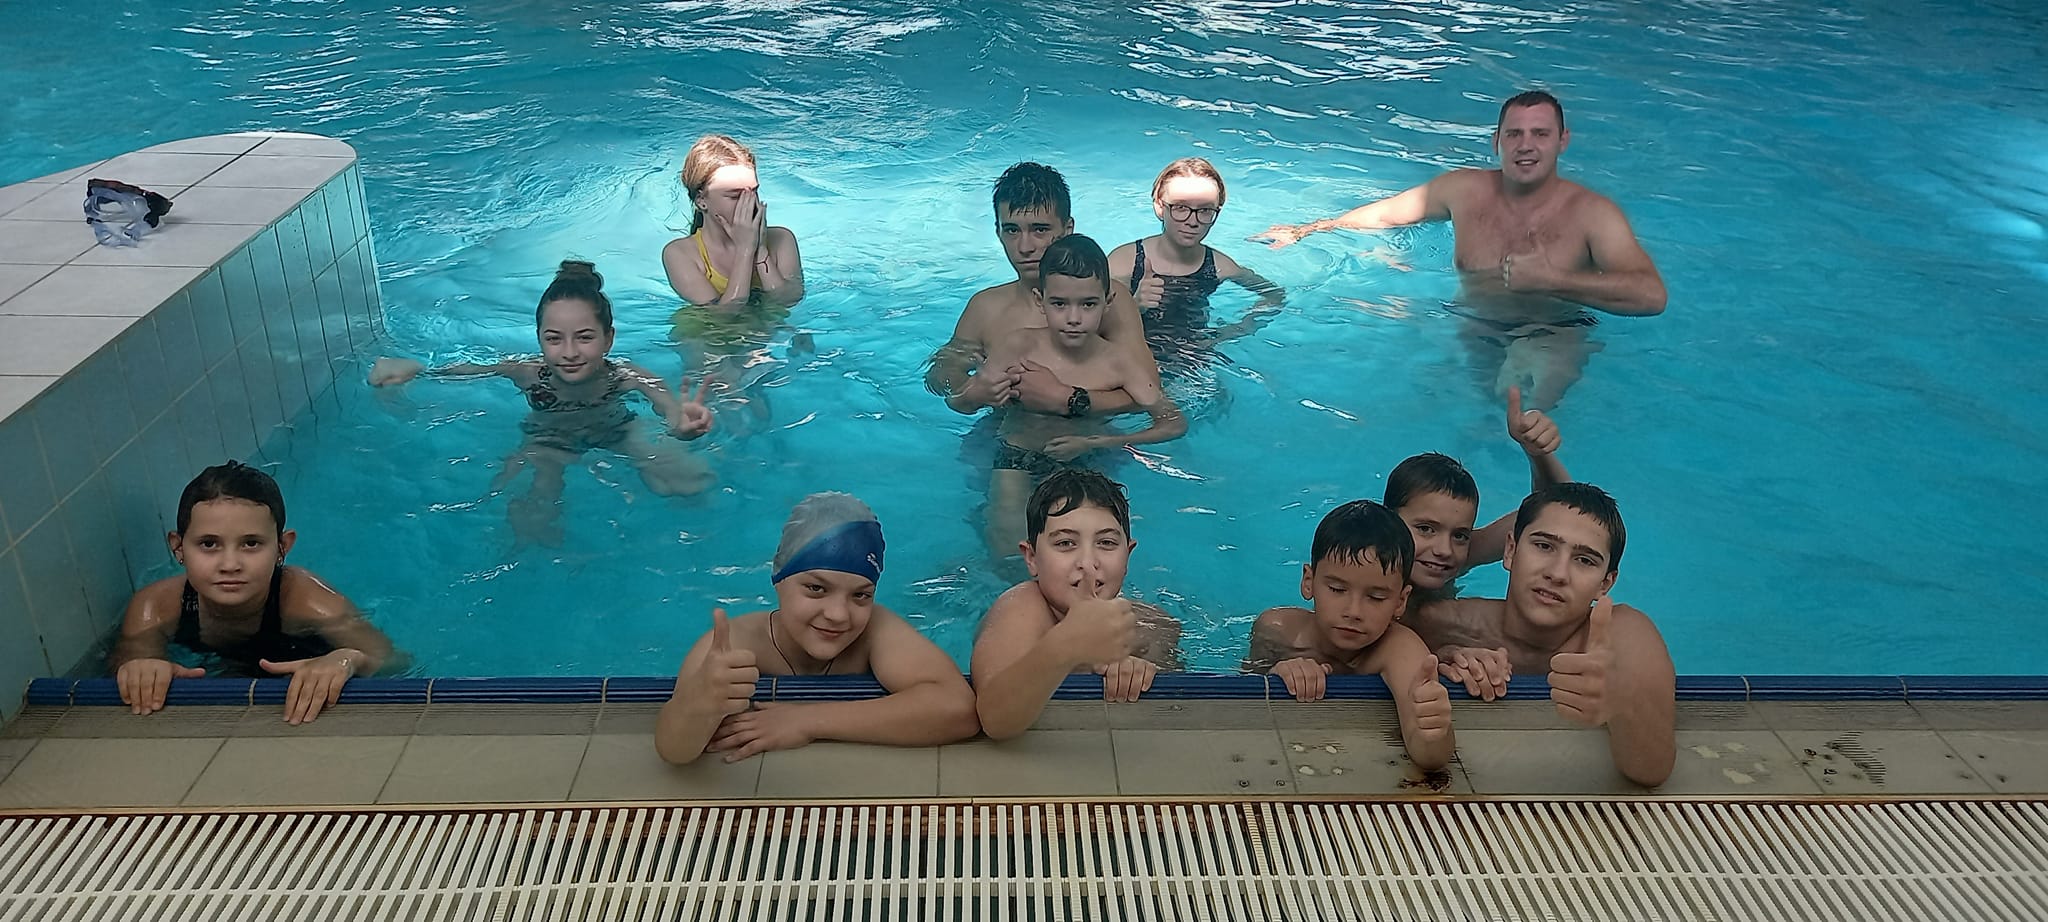 Група дітей купаються в басейні